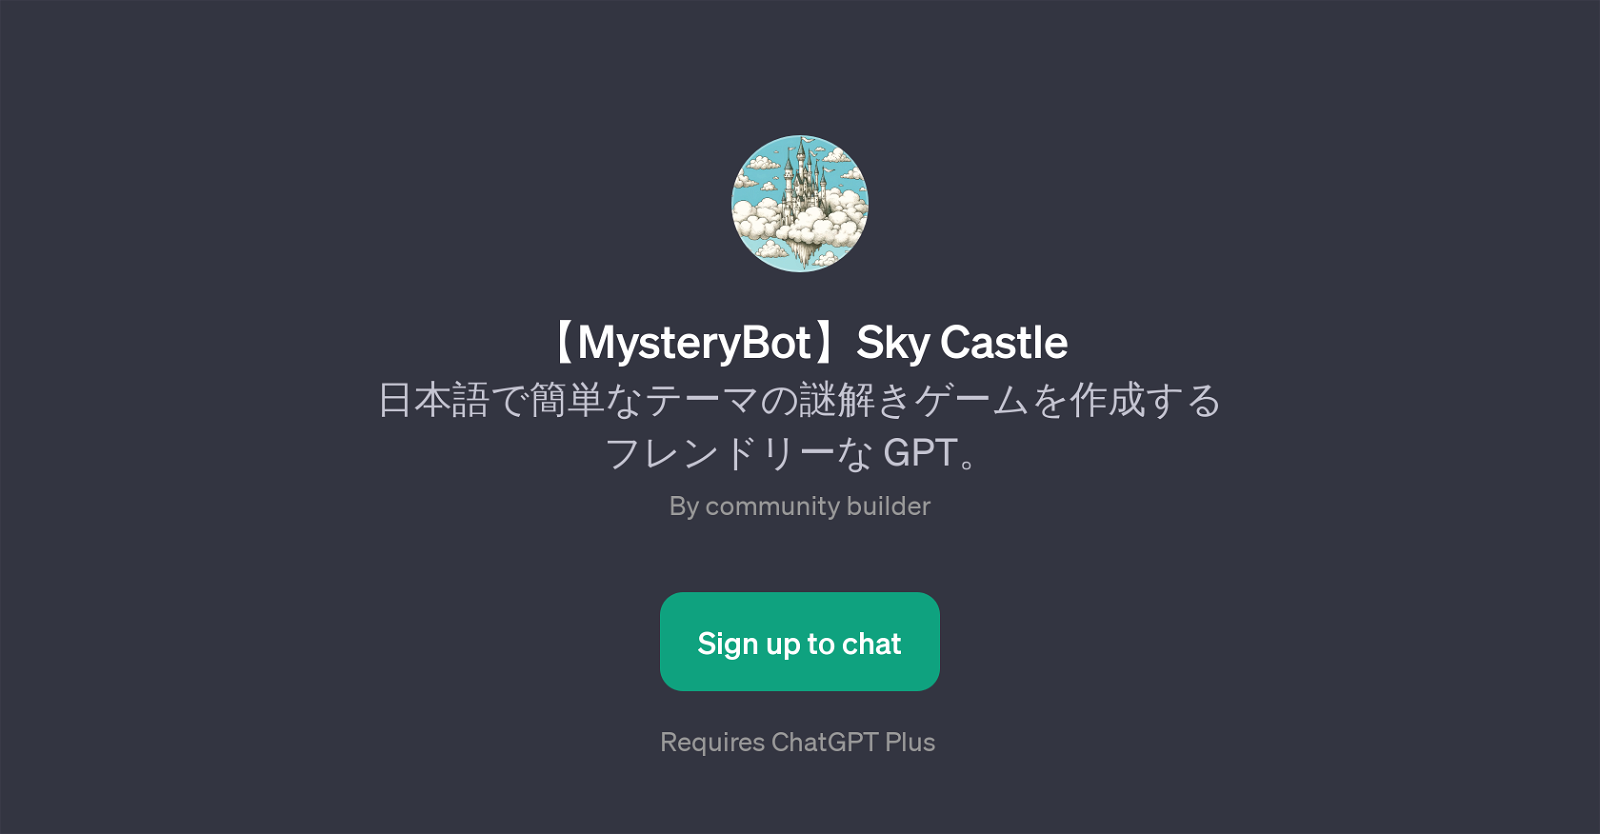 MysteryBot Sky Castle website